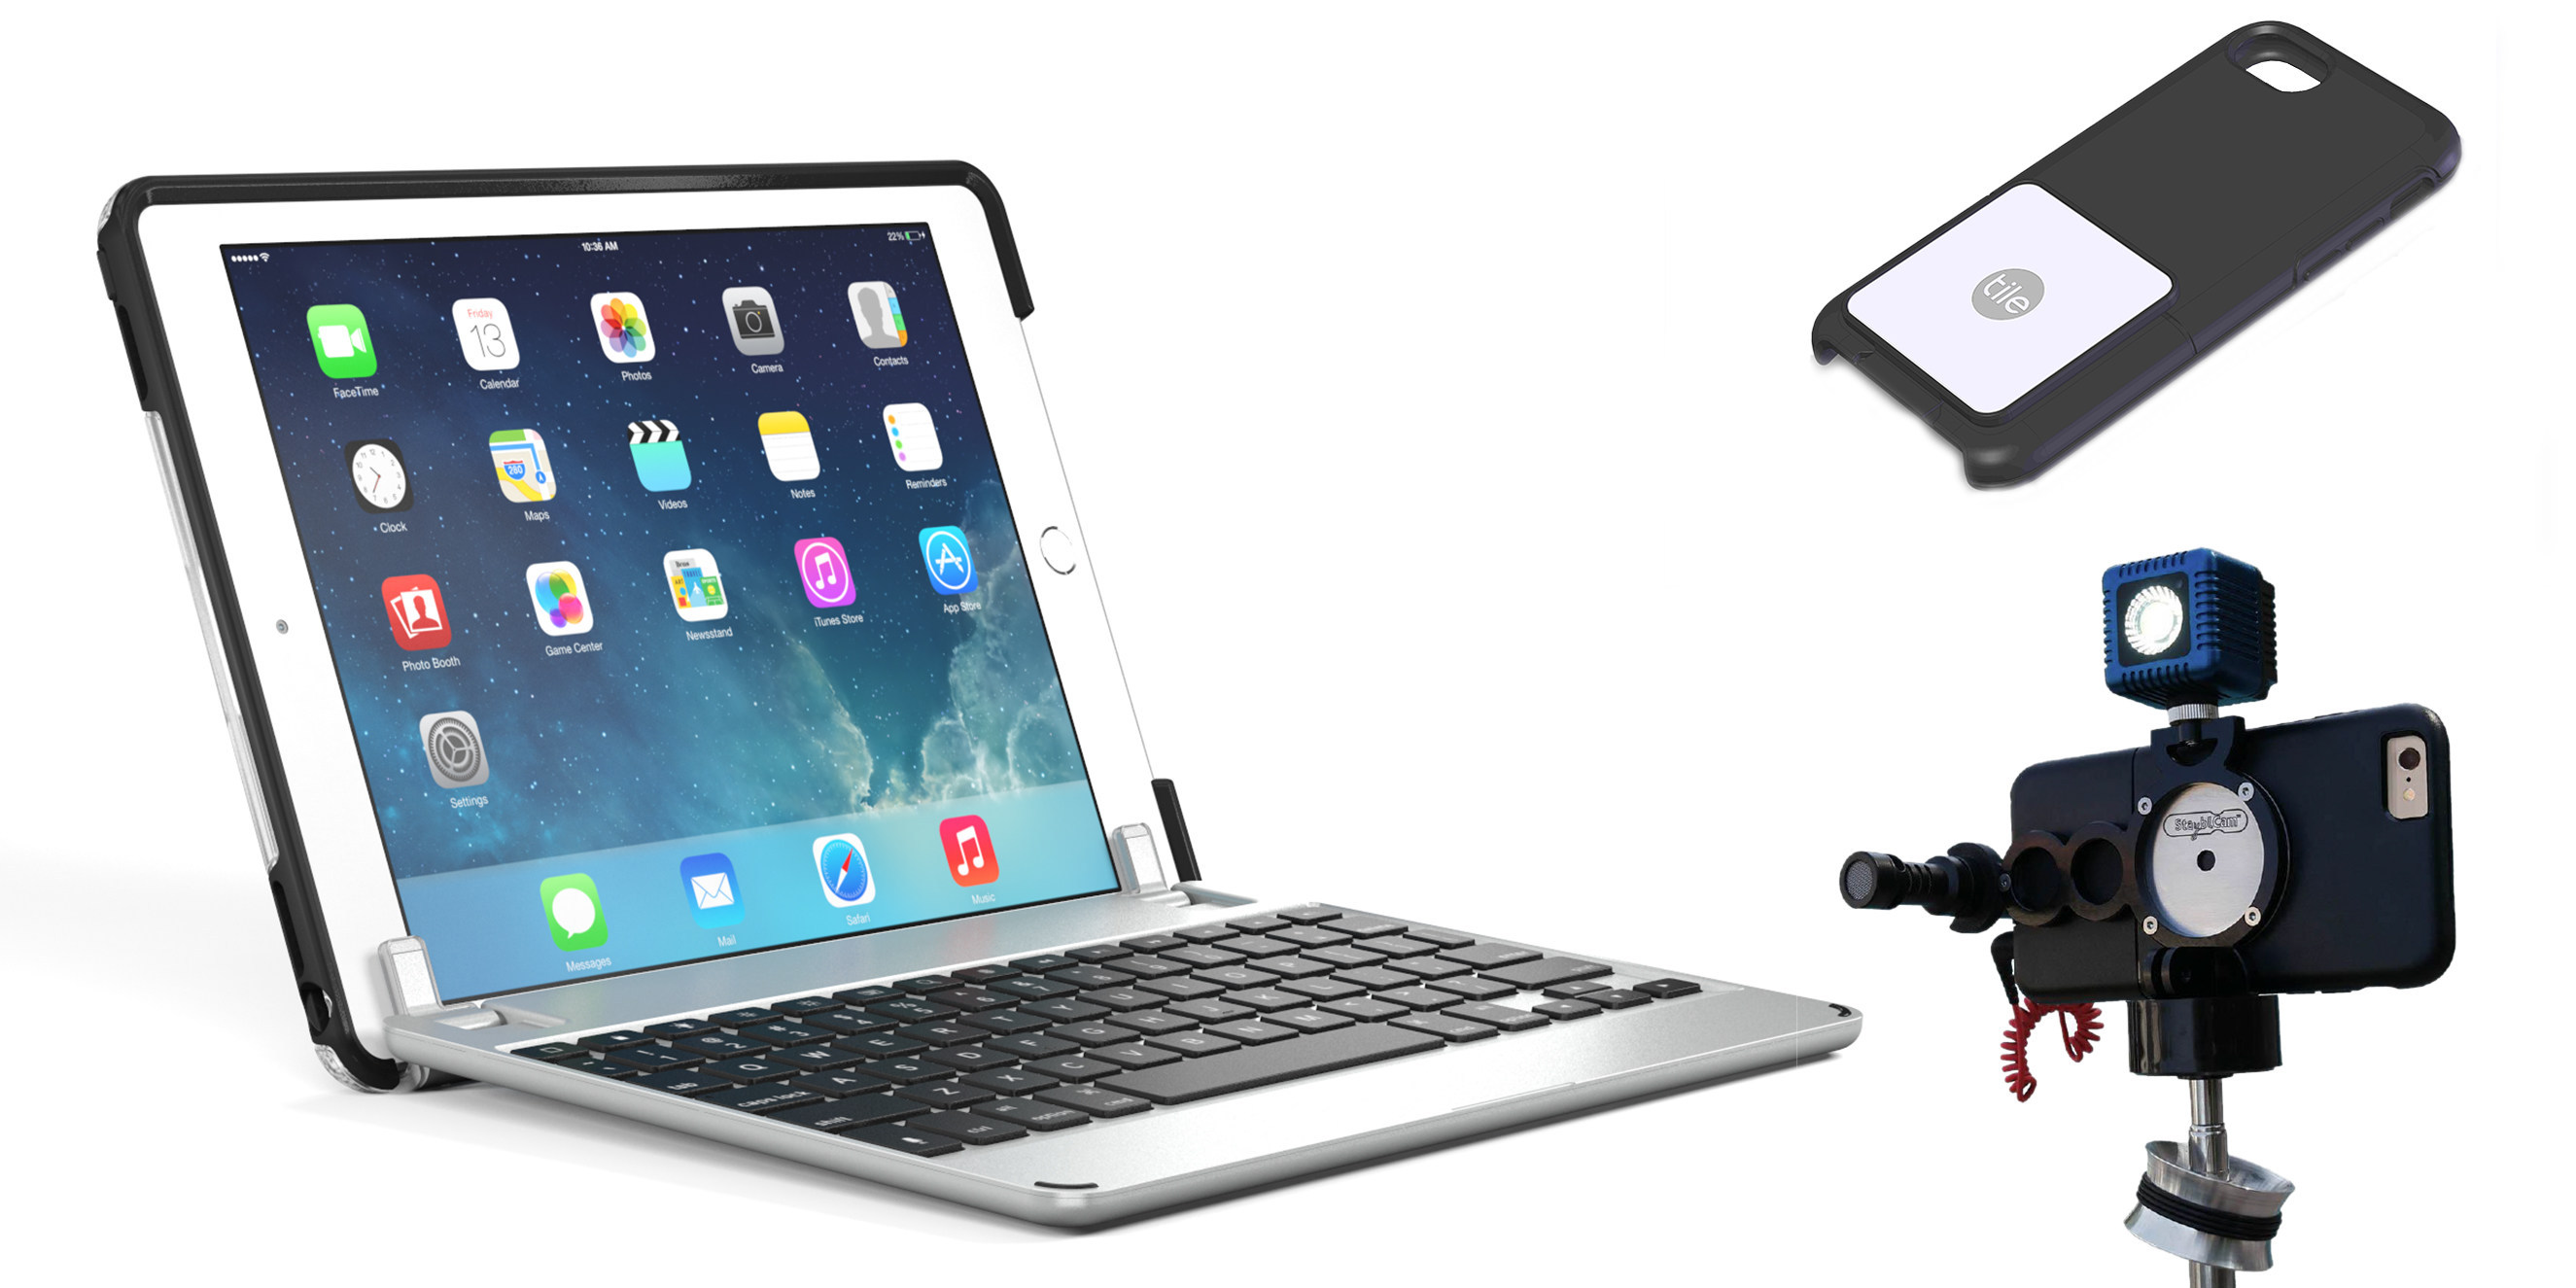 iPad Air 2/ iPad Air Blue iPad Keyboard Case for iPad 6th Gen 2018 /iPad 5th Gen 2017/ iPad Pro 9.7 2016 360 Degree Rotating Bluetooth Keyboard Cover 